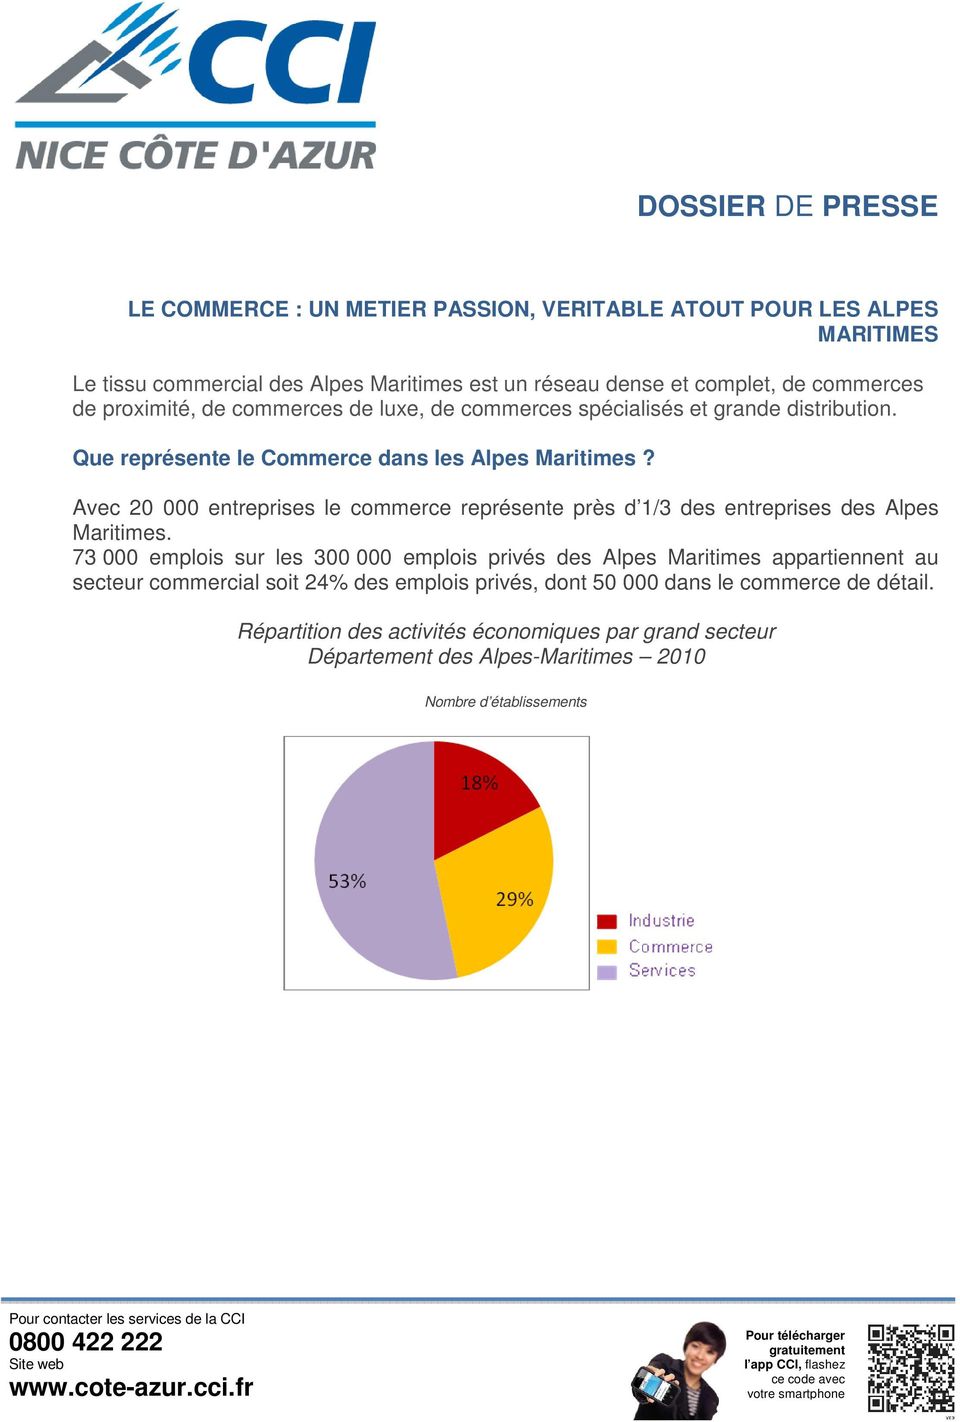 Avec 20 000 entreprises le commerce représente près d 1/3 des entreprises des Alpes Maritimes.